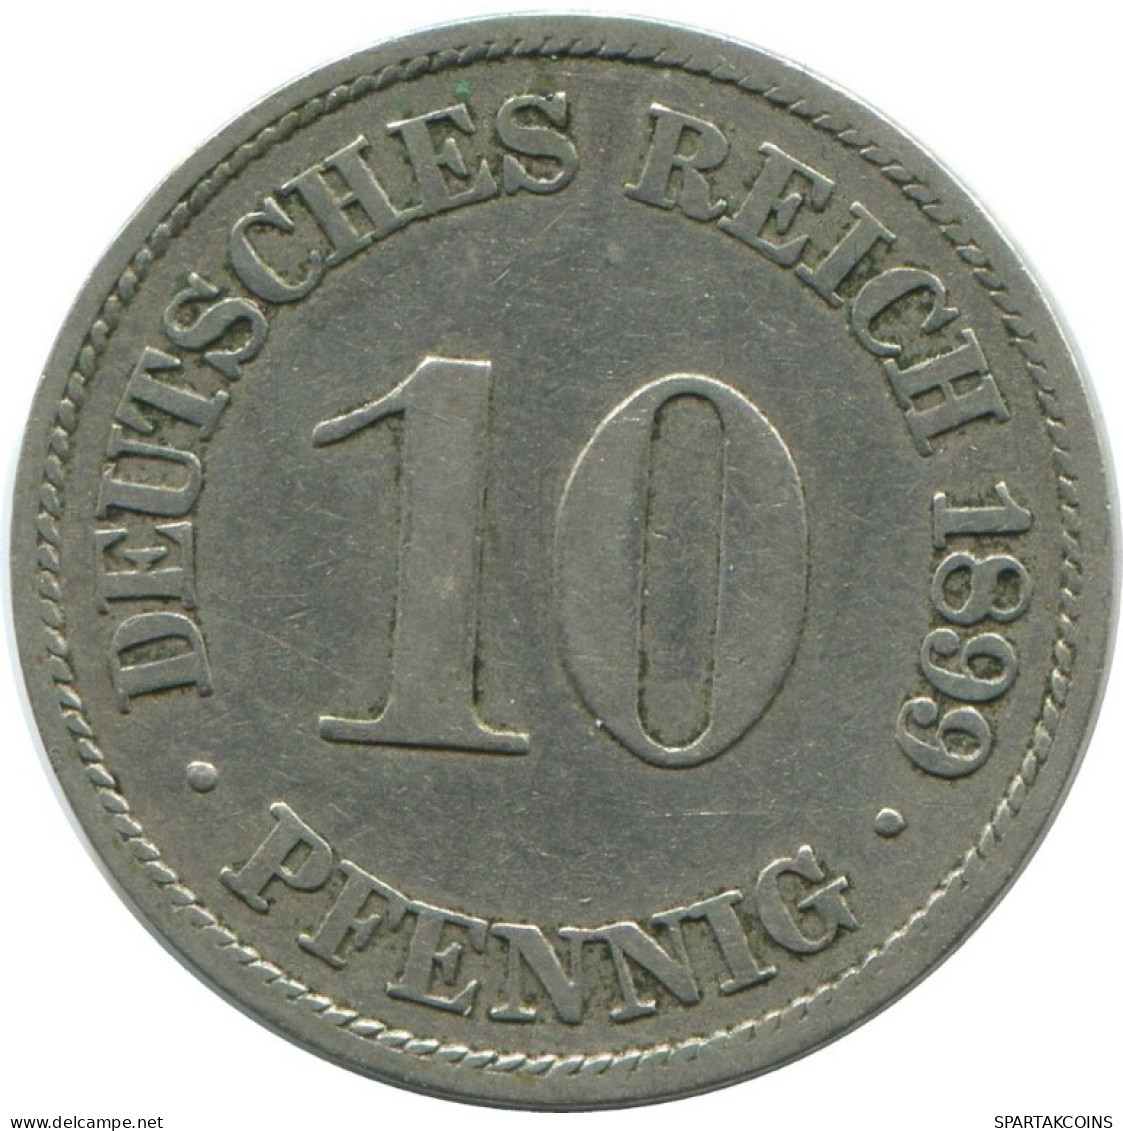 10 PFENNIG 1899 A GERMANY Coin #AE522.U.A - 10 Pfennig